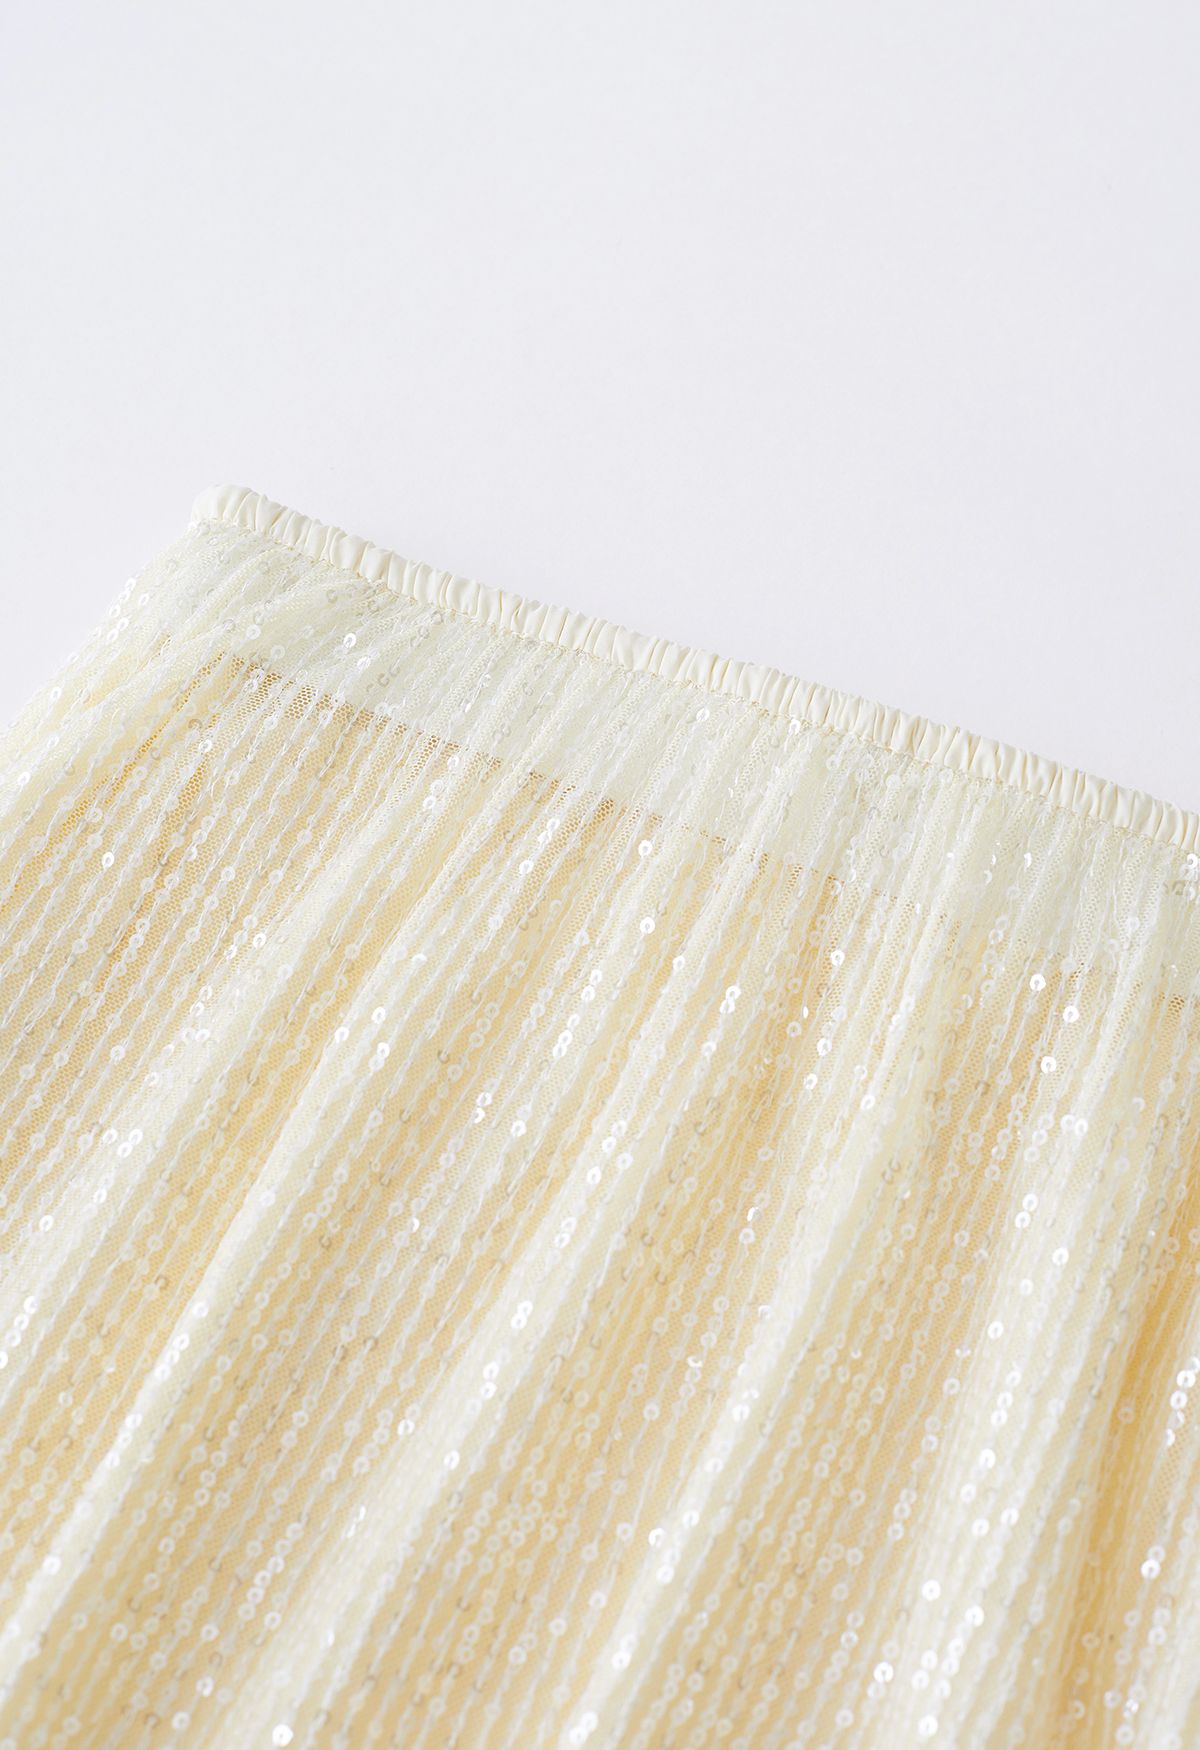 Falda de sirena con lentejuelas deslumbrantes en color crema